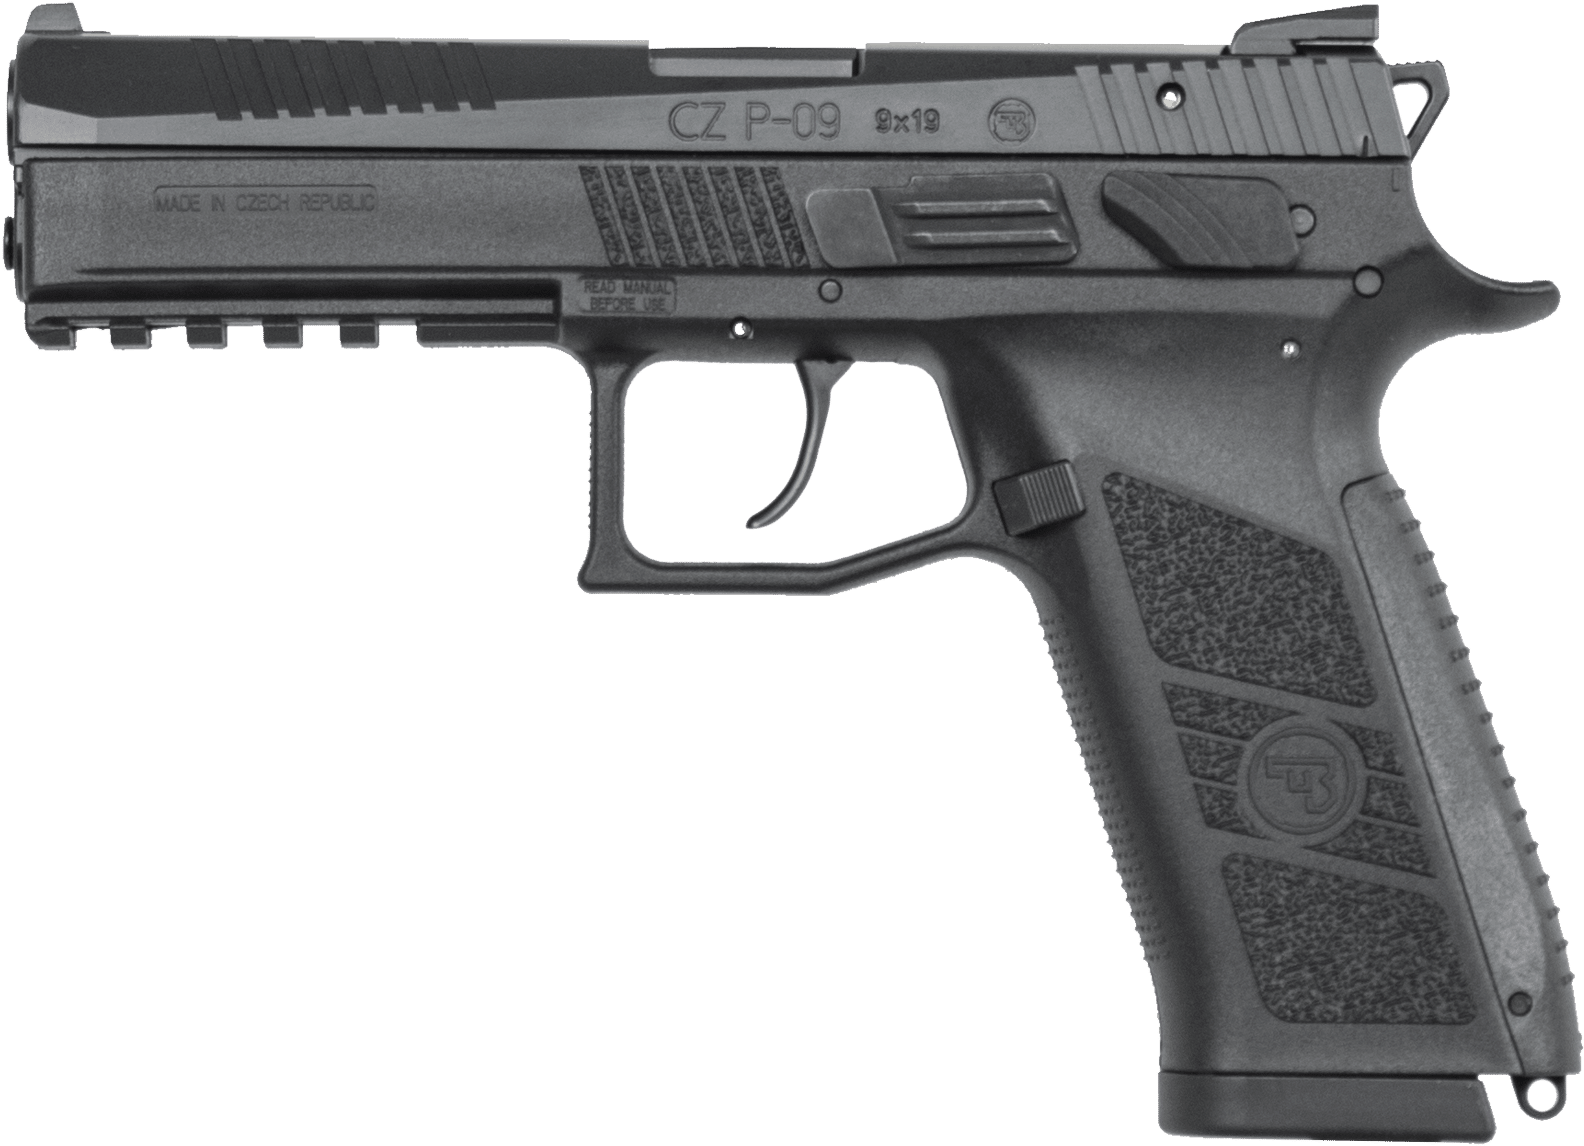 C Z P09 Semi Automatic Pistol PNG image